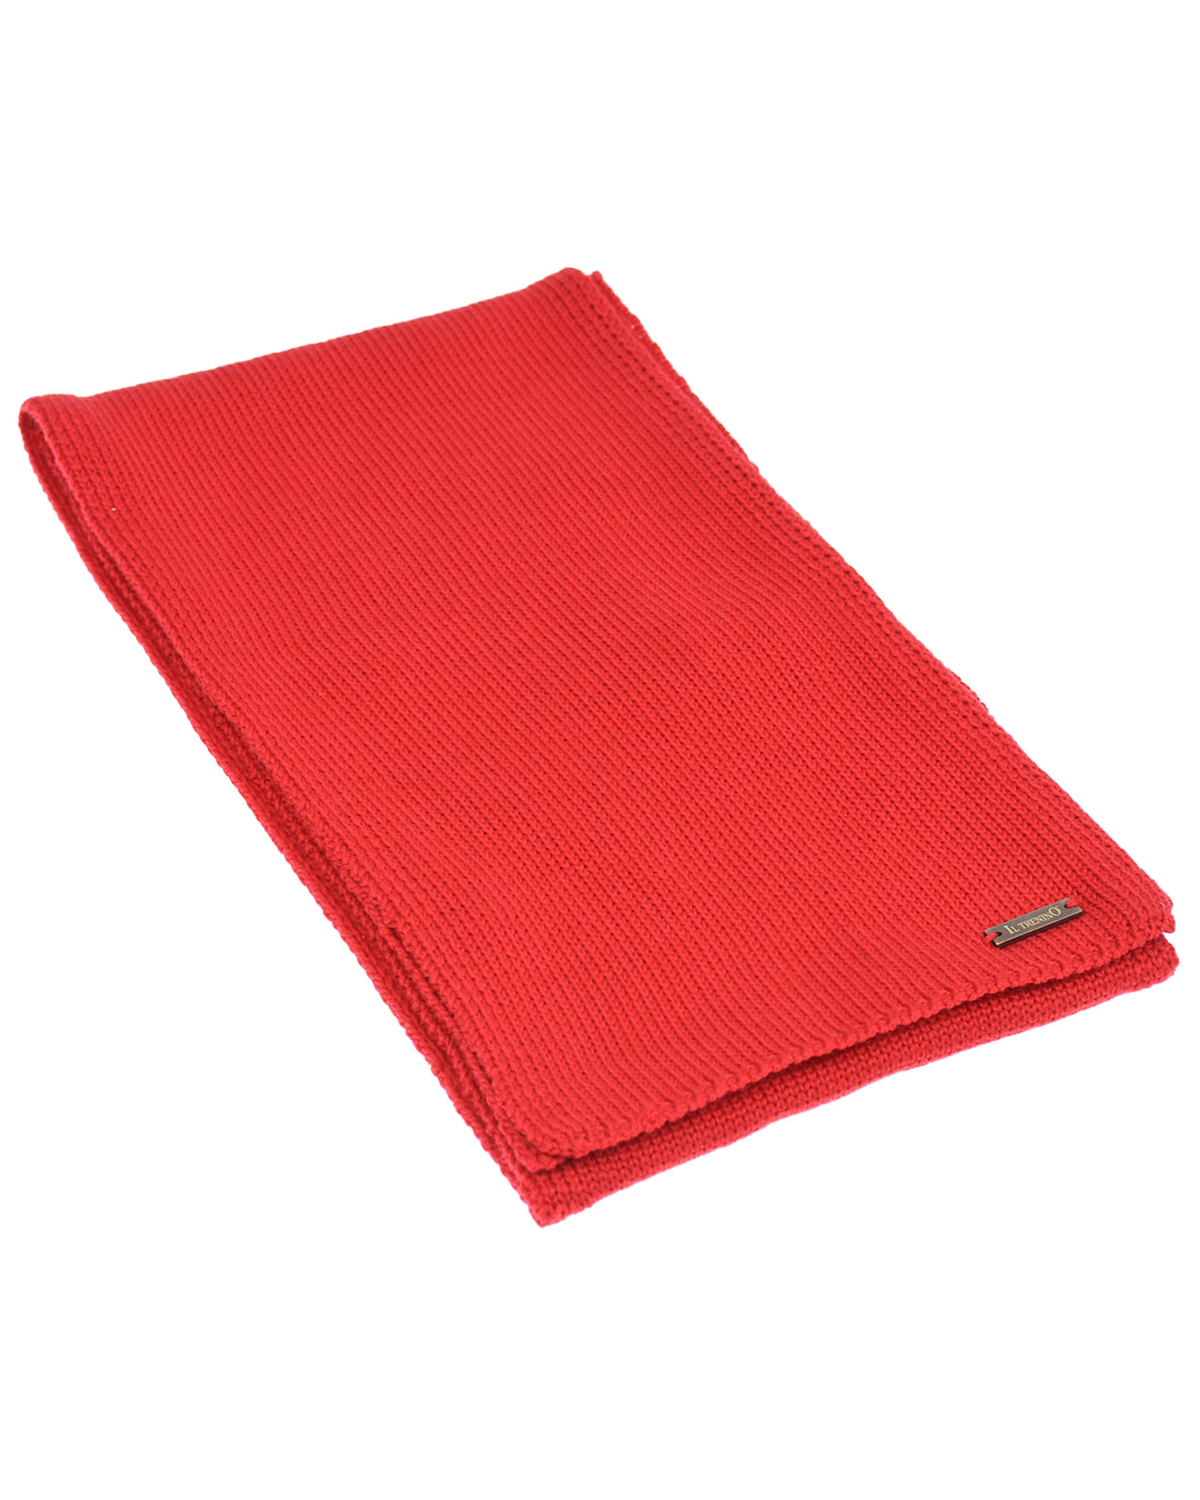 Красный шерстяной шарф, 140x19 см Il Trenino детский, размер unica